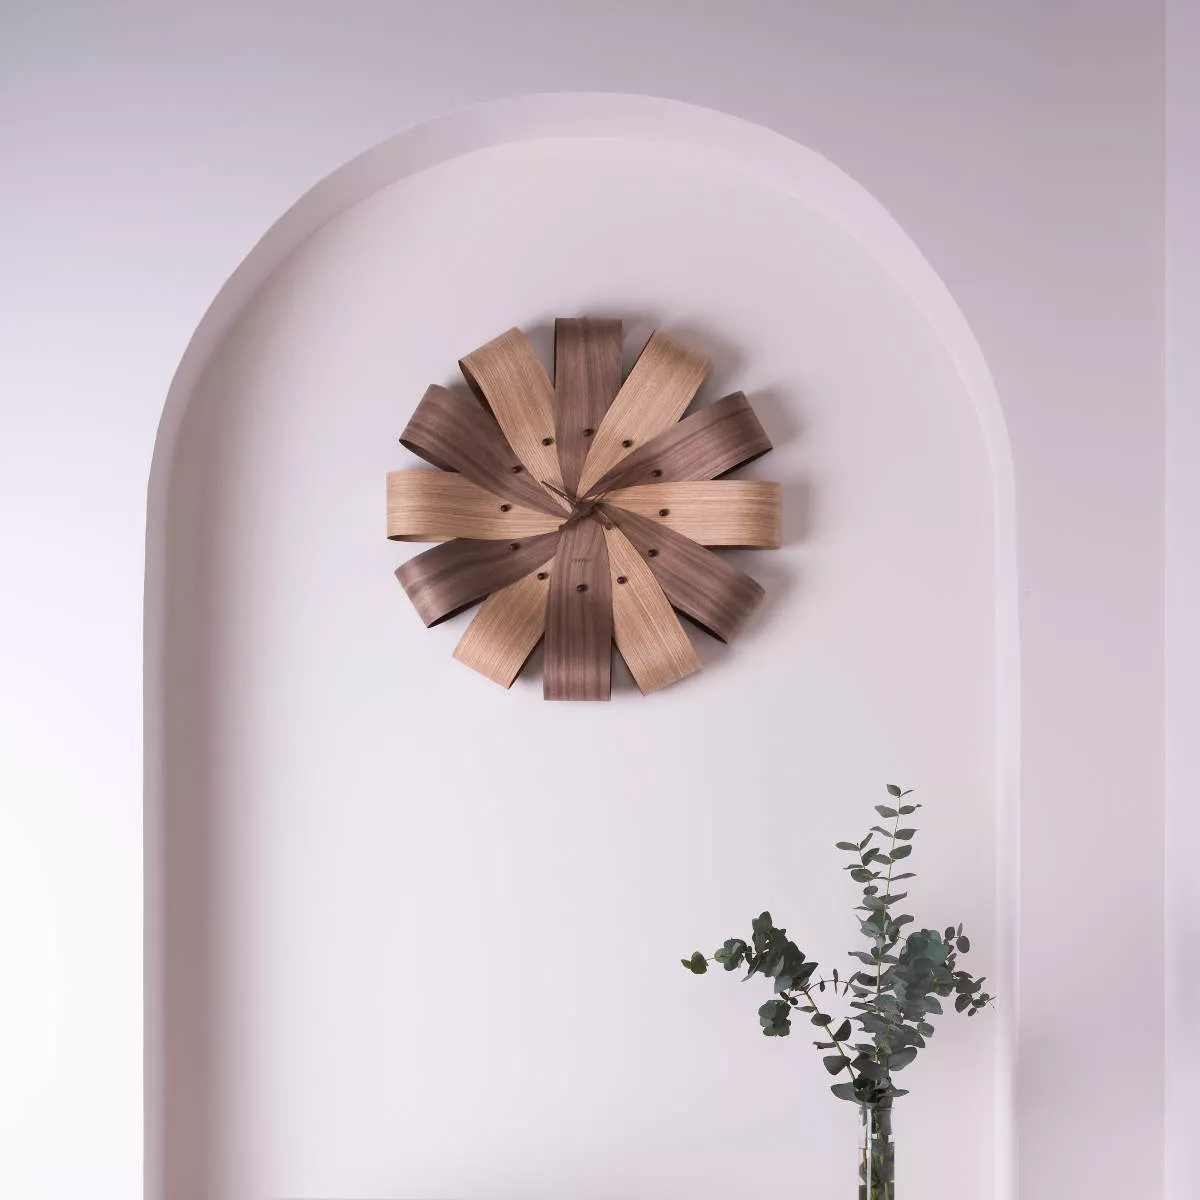 Design wall clock Ciclo by Nomon